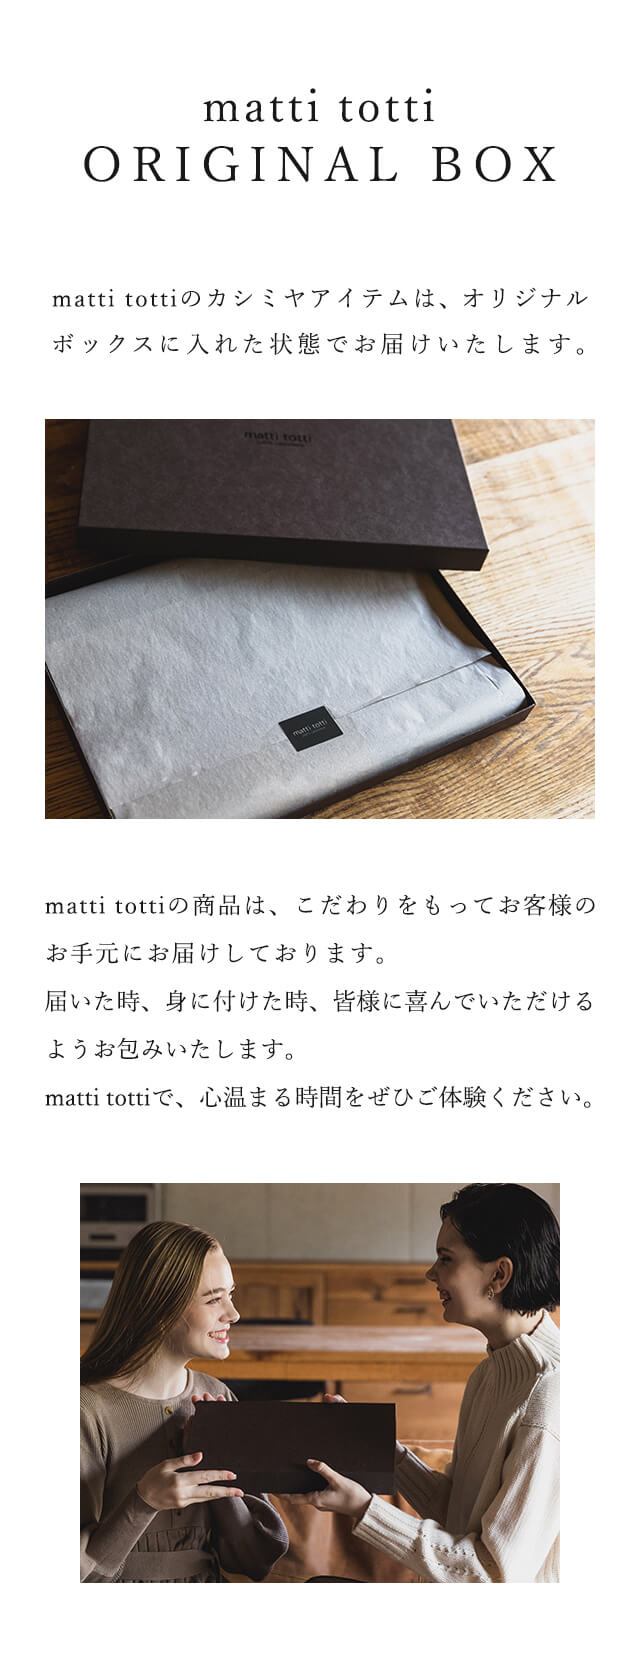 matti totti ORIGINAL BOX｜matti tottiのカシミヤアイテムは、オリジナルボックスに入れた状態でお届けいたします。